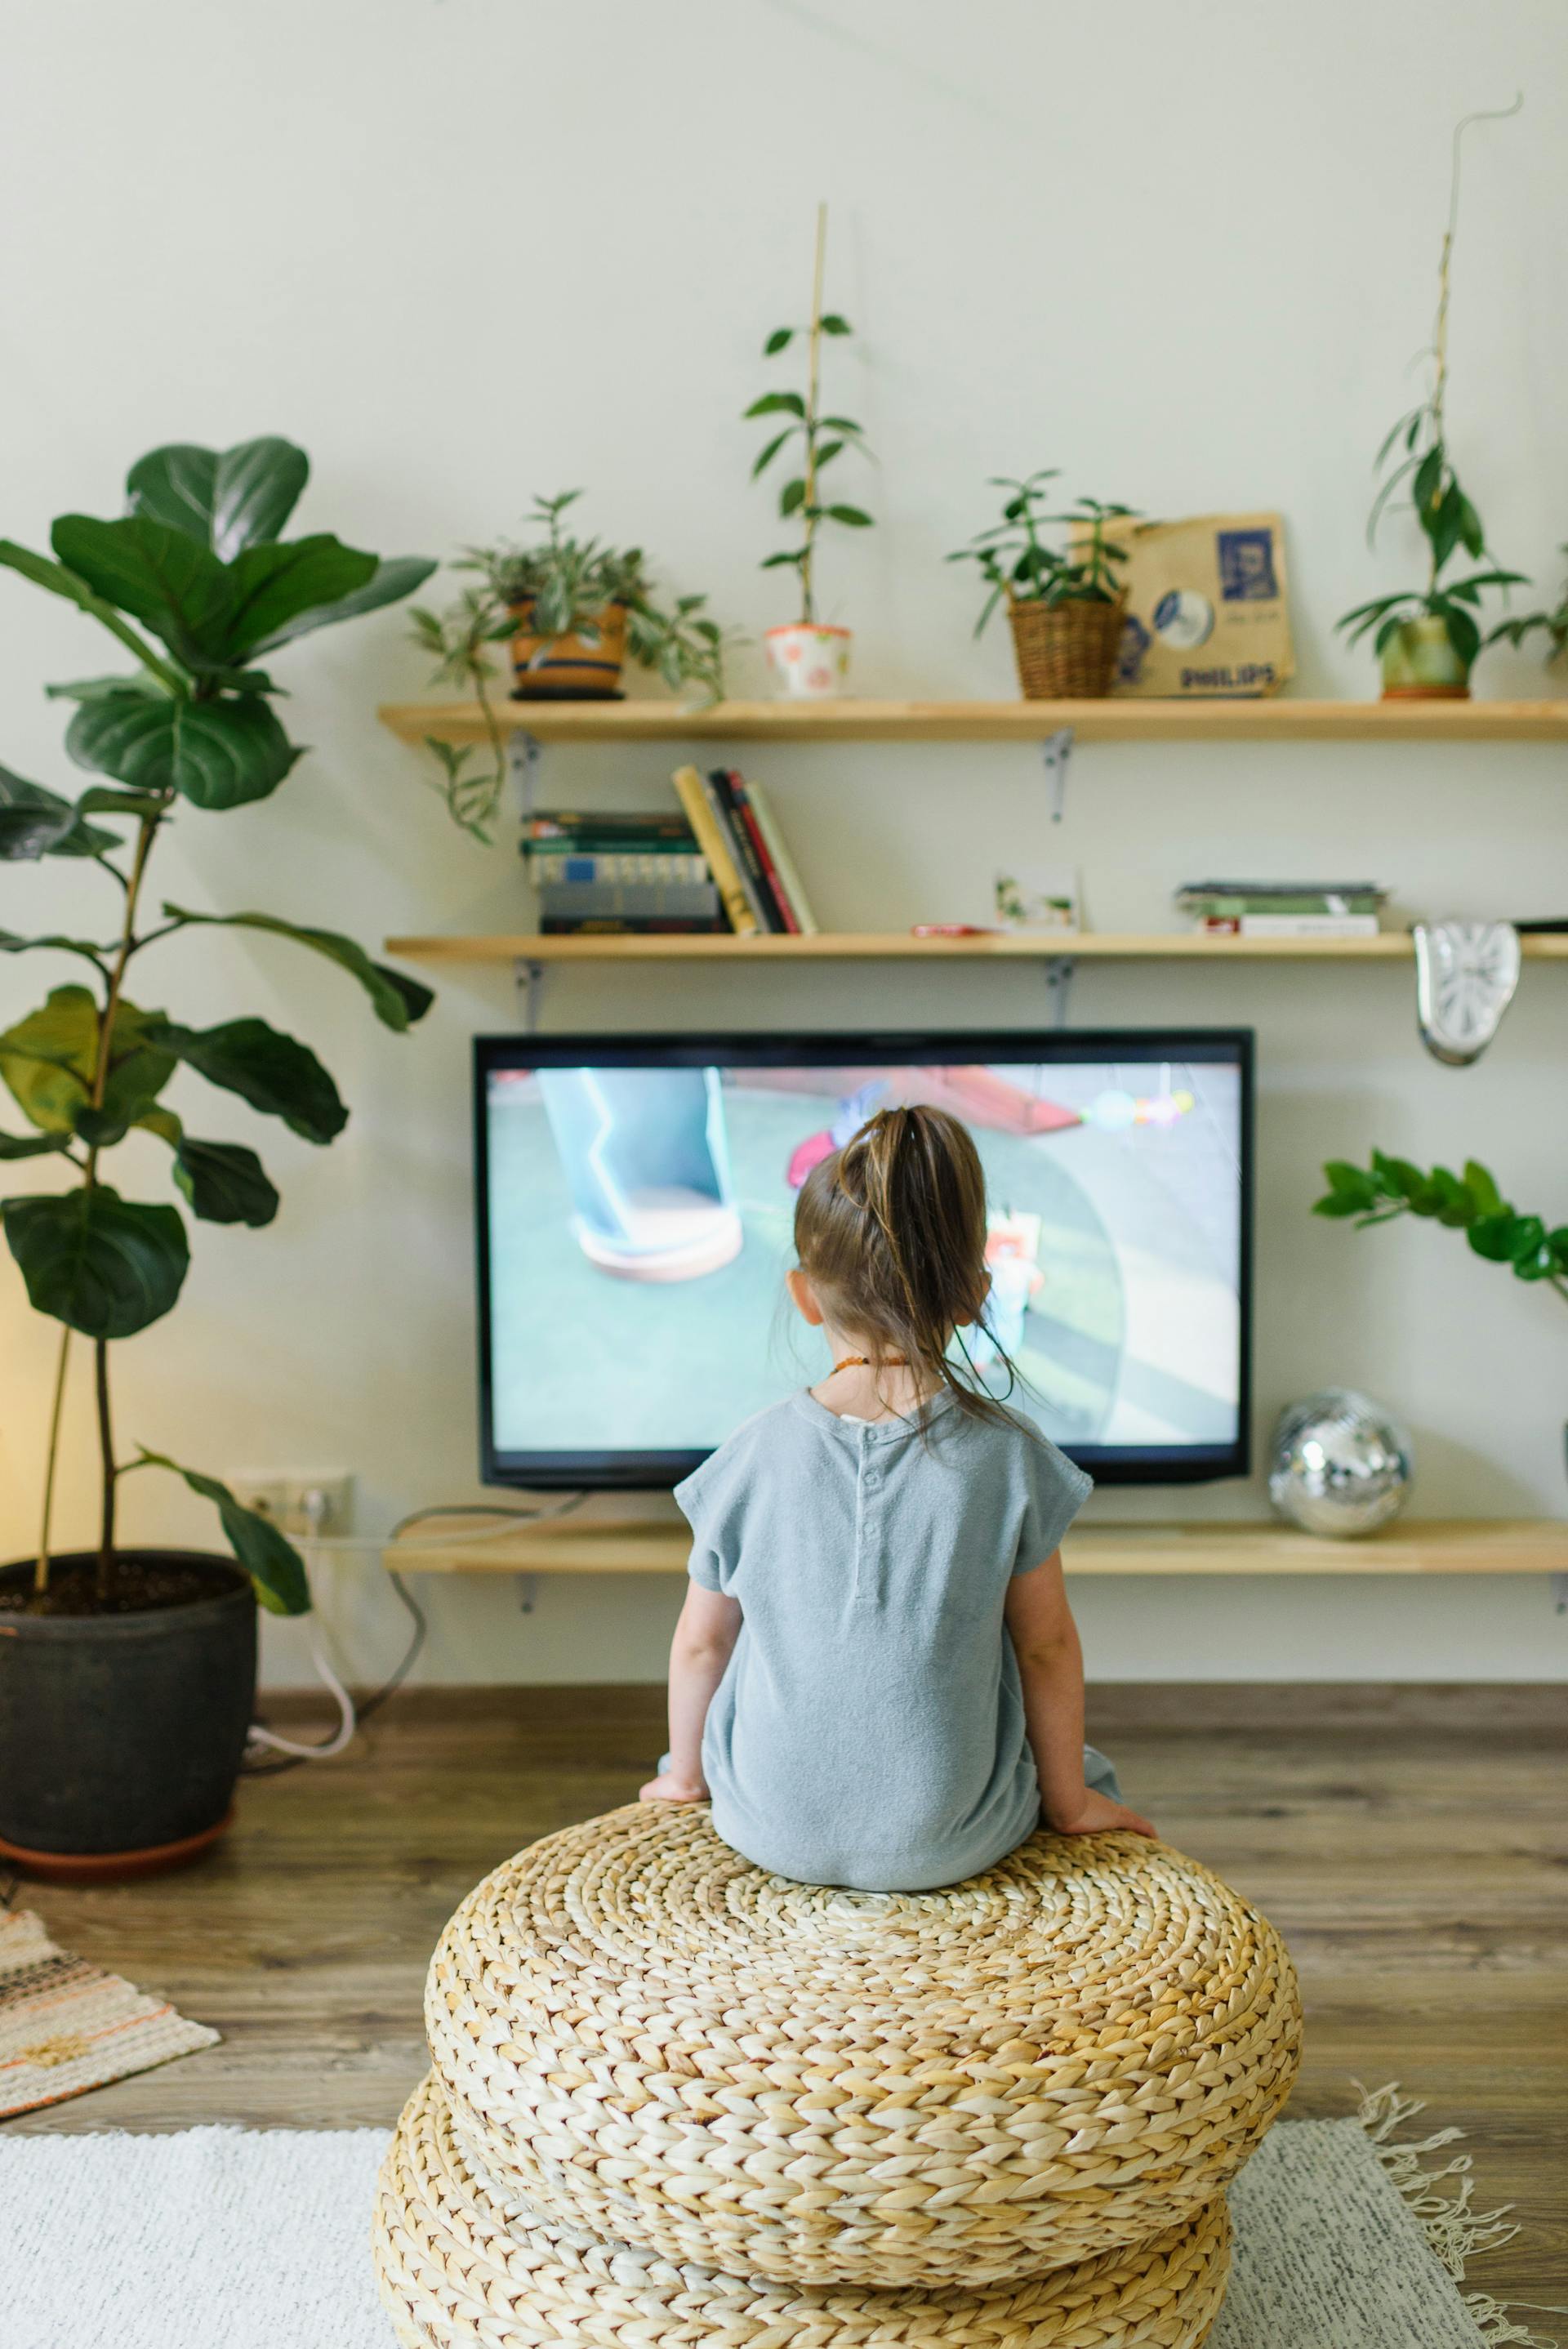 Ein Kind vor dem Fernseher | Quelle: Pexels